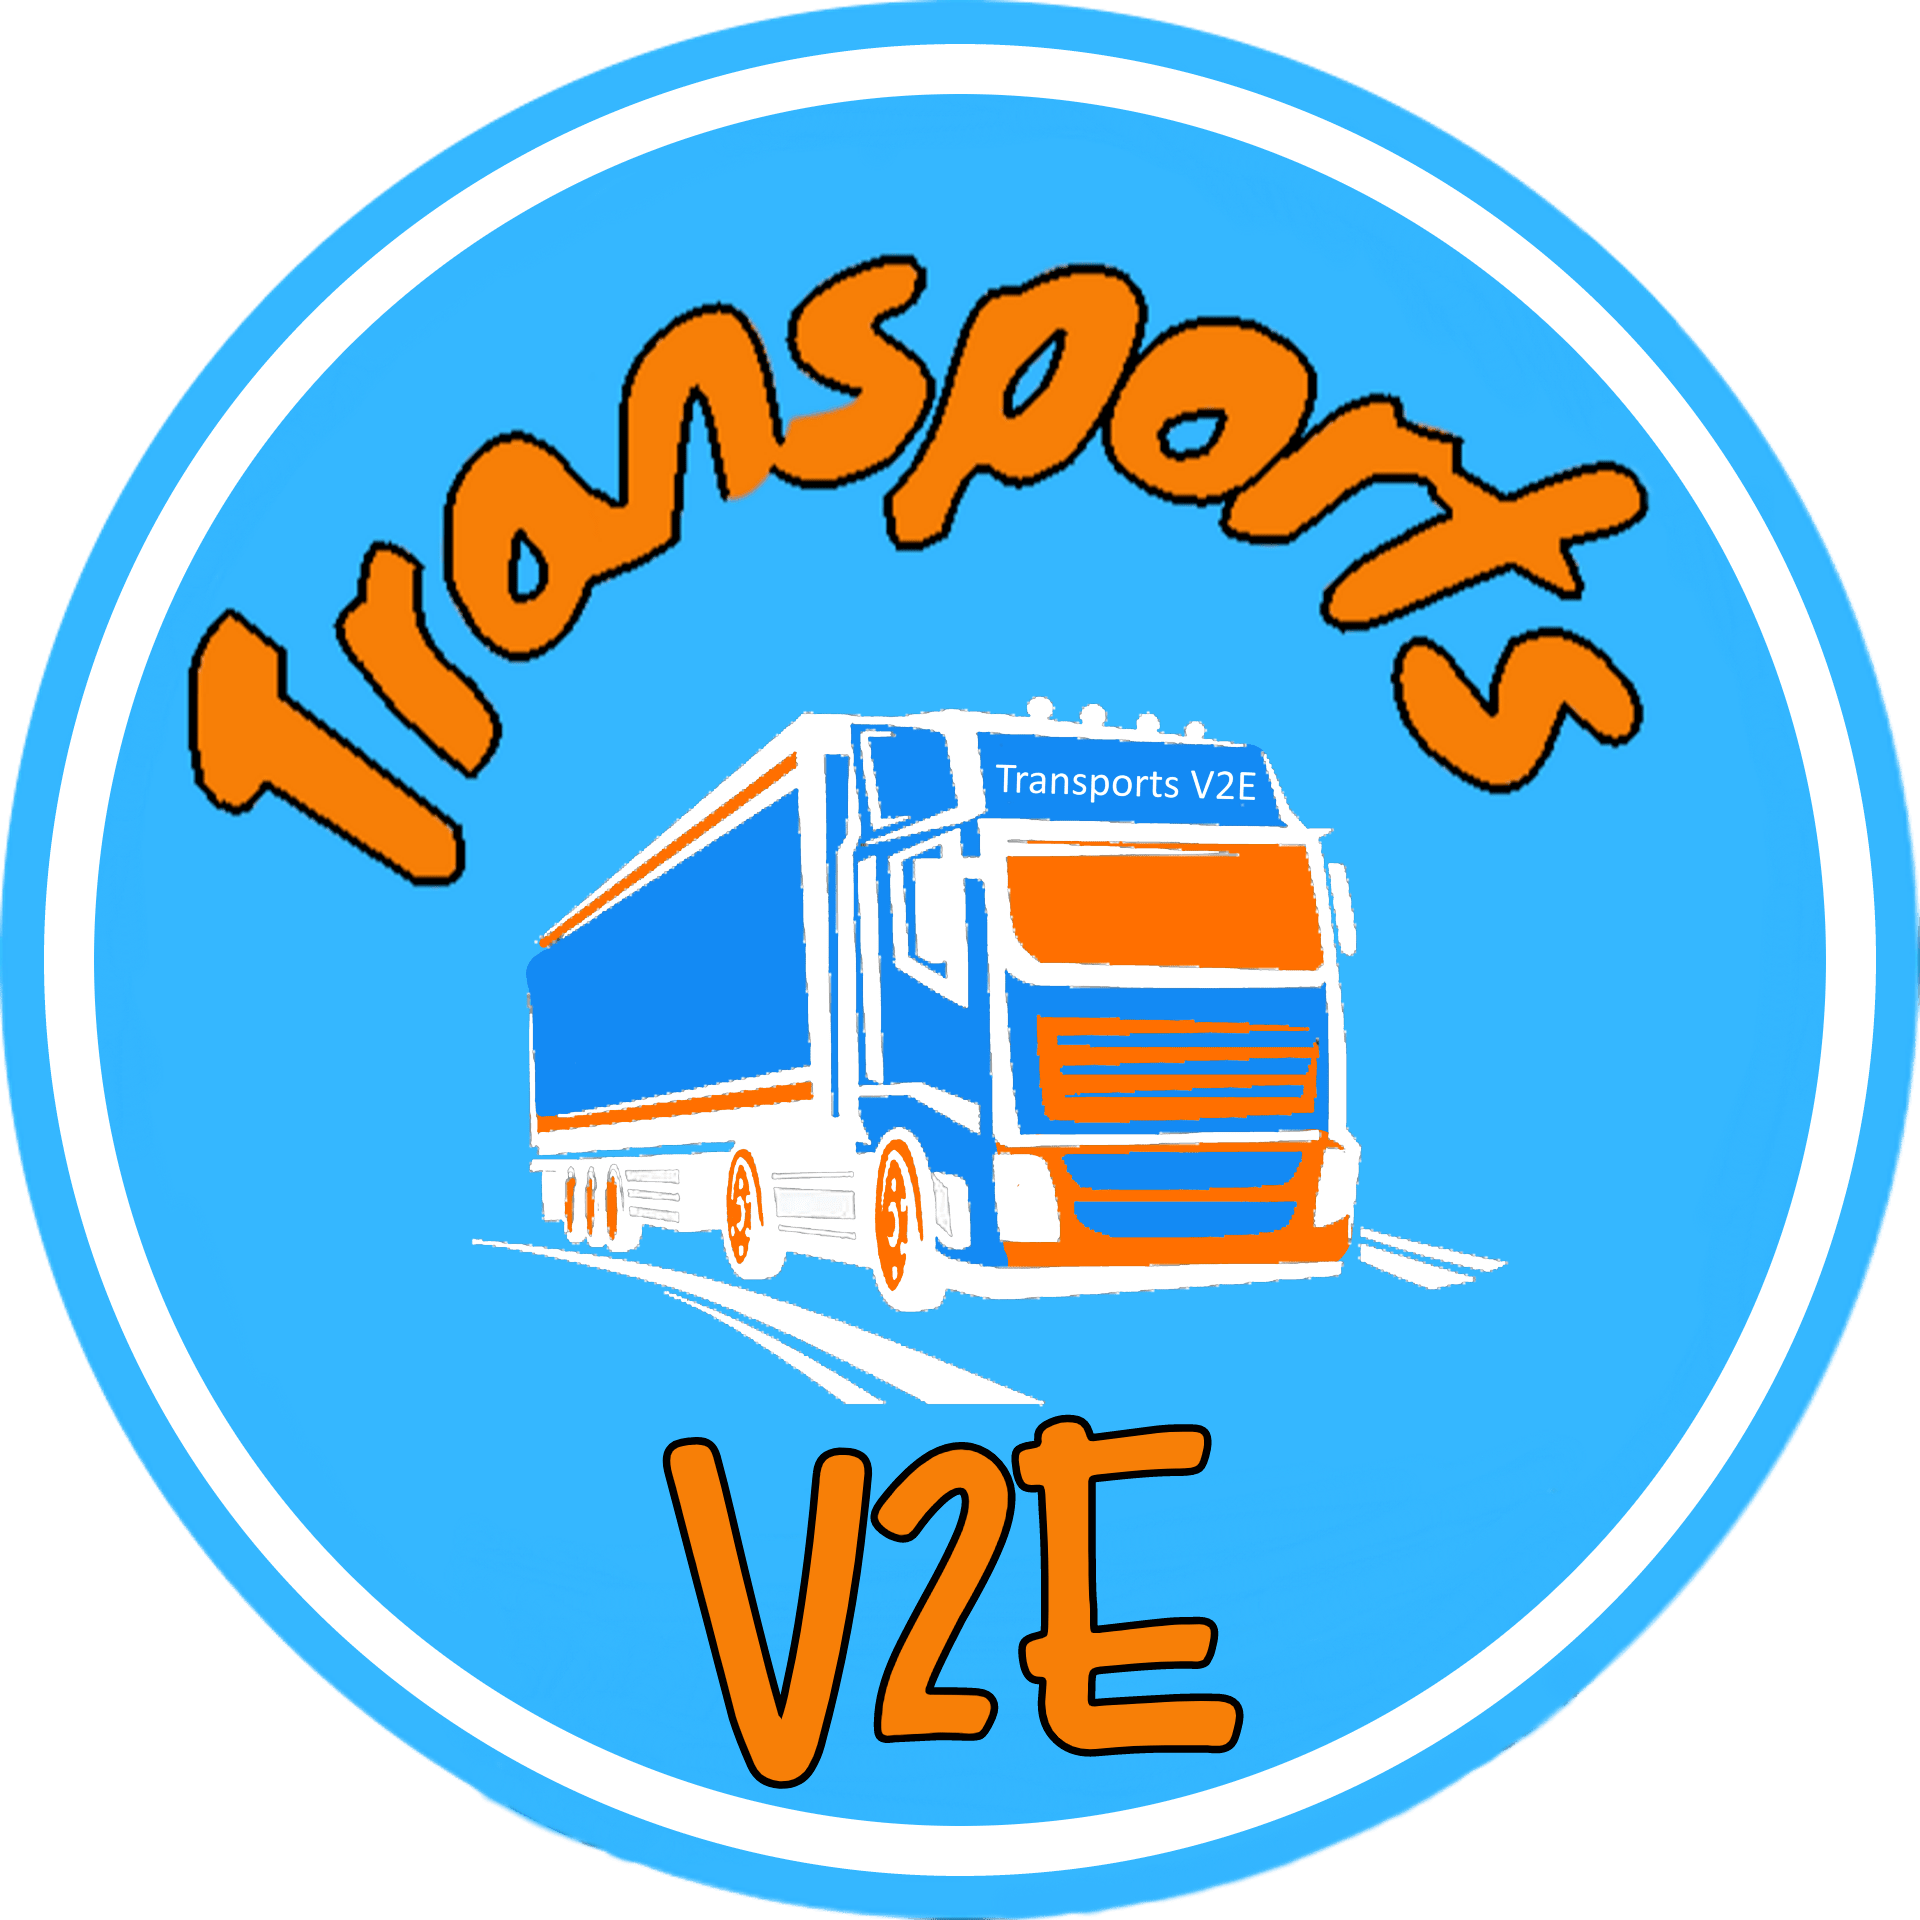 Transports V2E